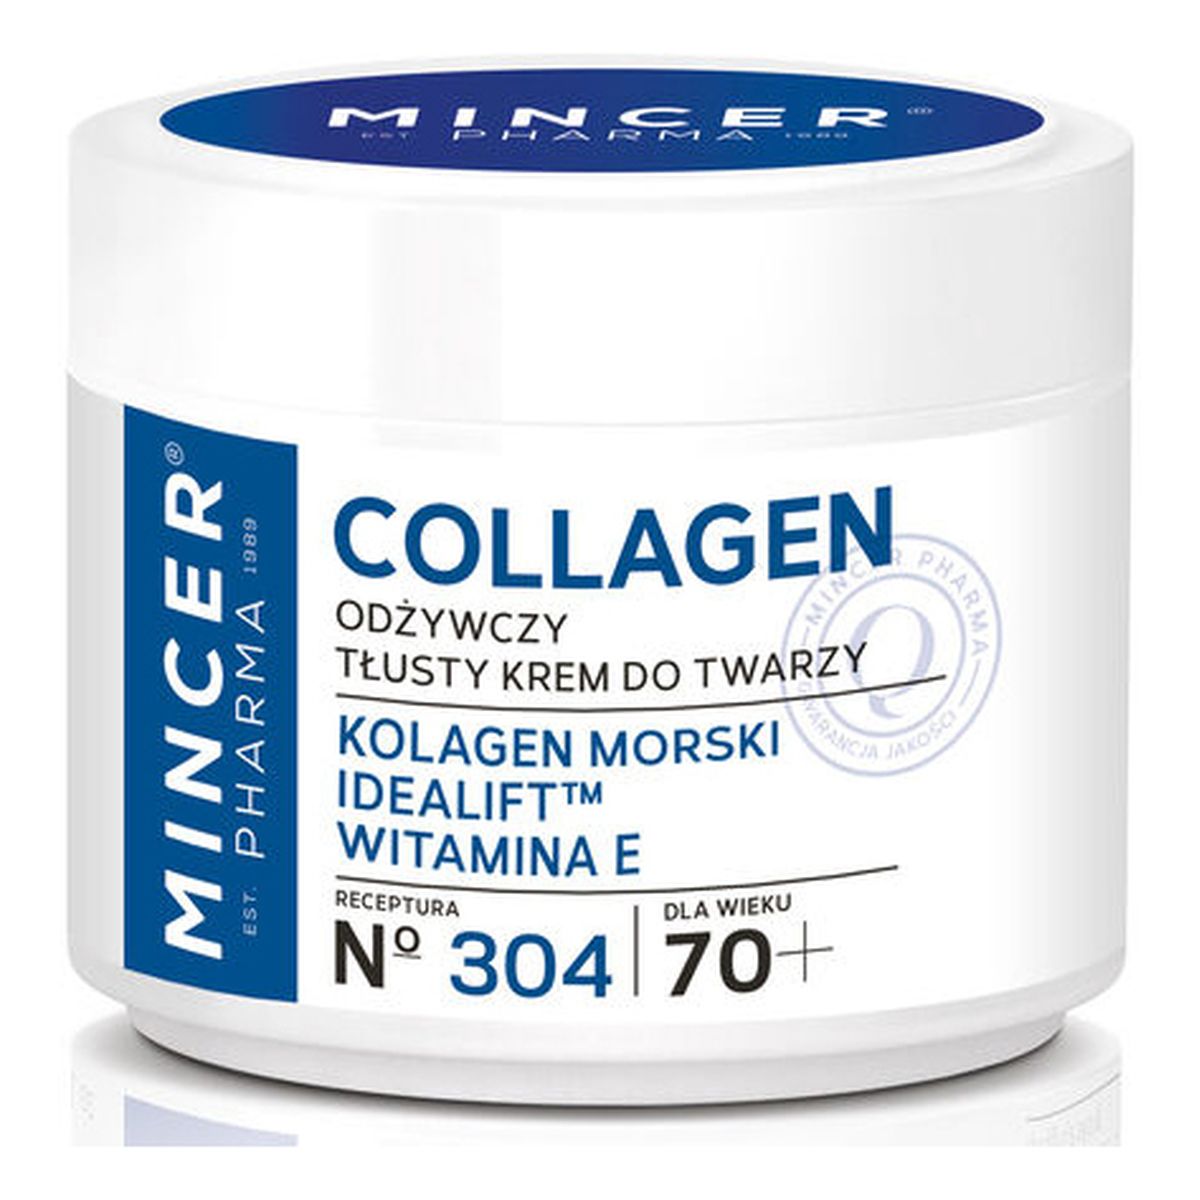 Mincer Pharma Collagen Krem Do Twarzy Odżywczy Tłusty 70+ No 304 50ml